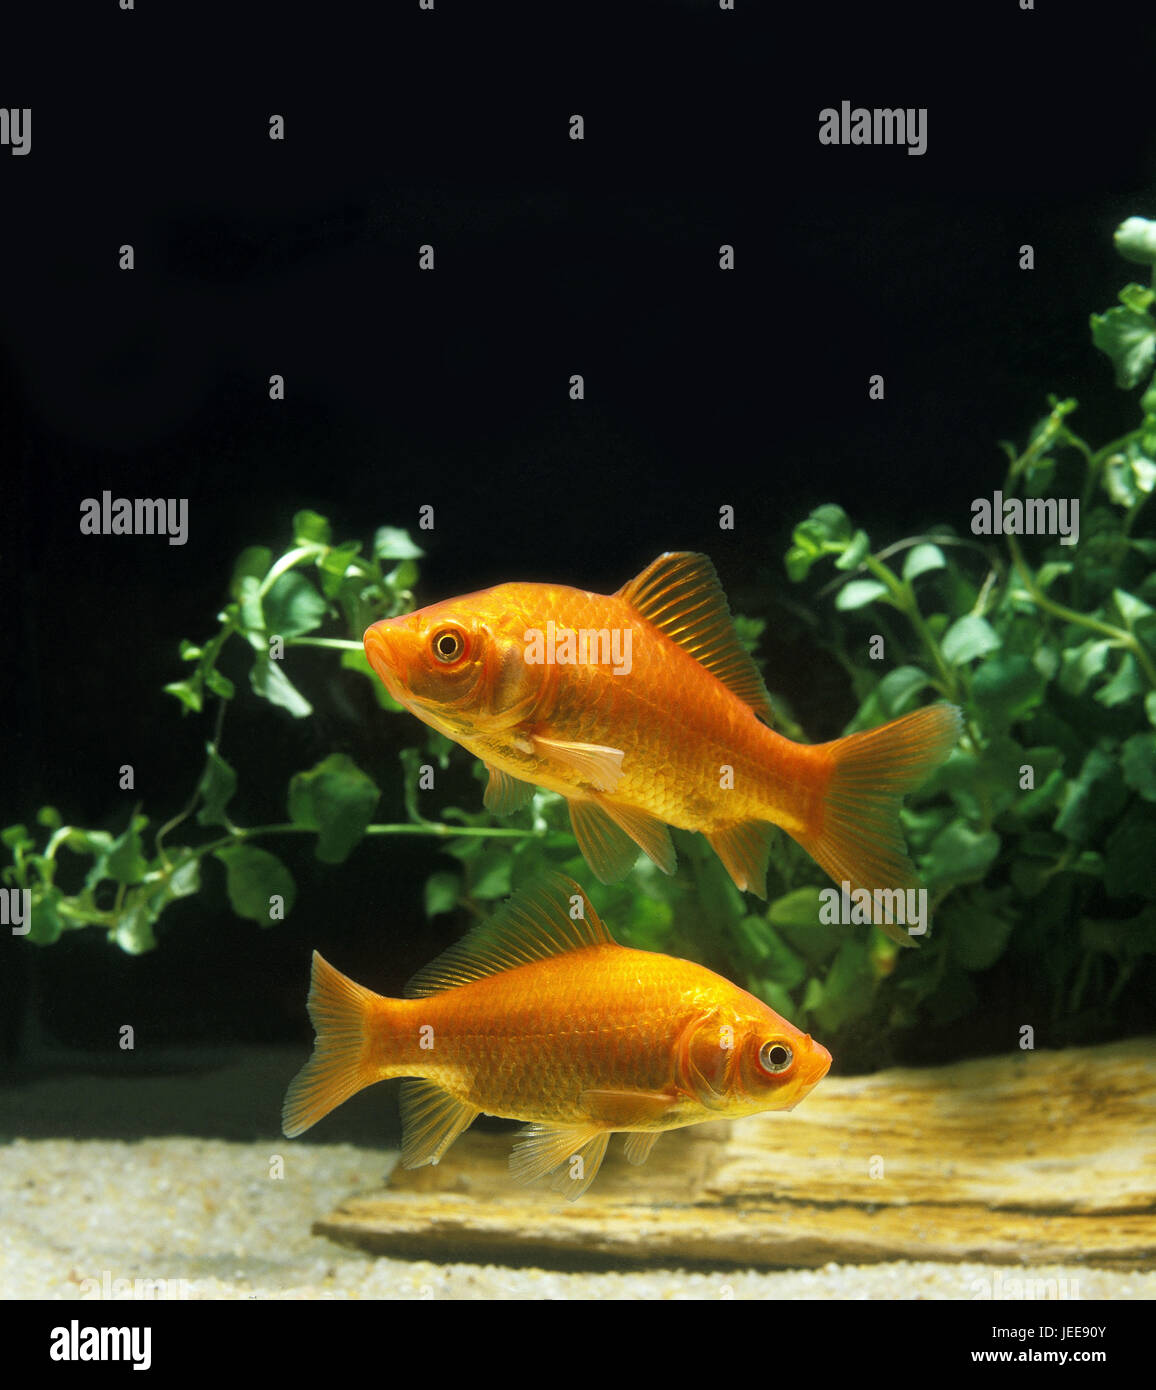 Goldfish, Carassius auratus, Stock Photo